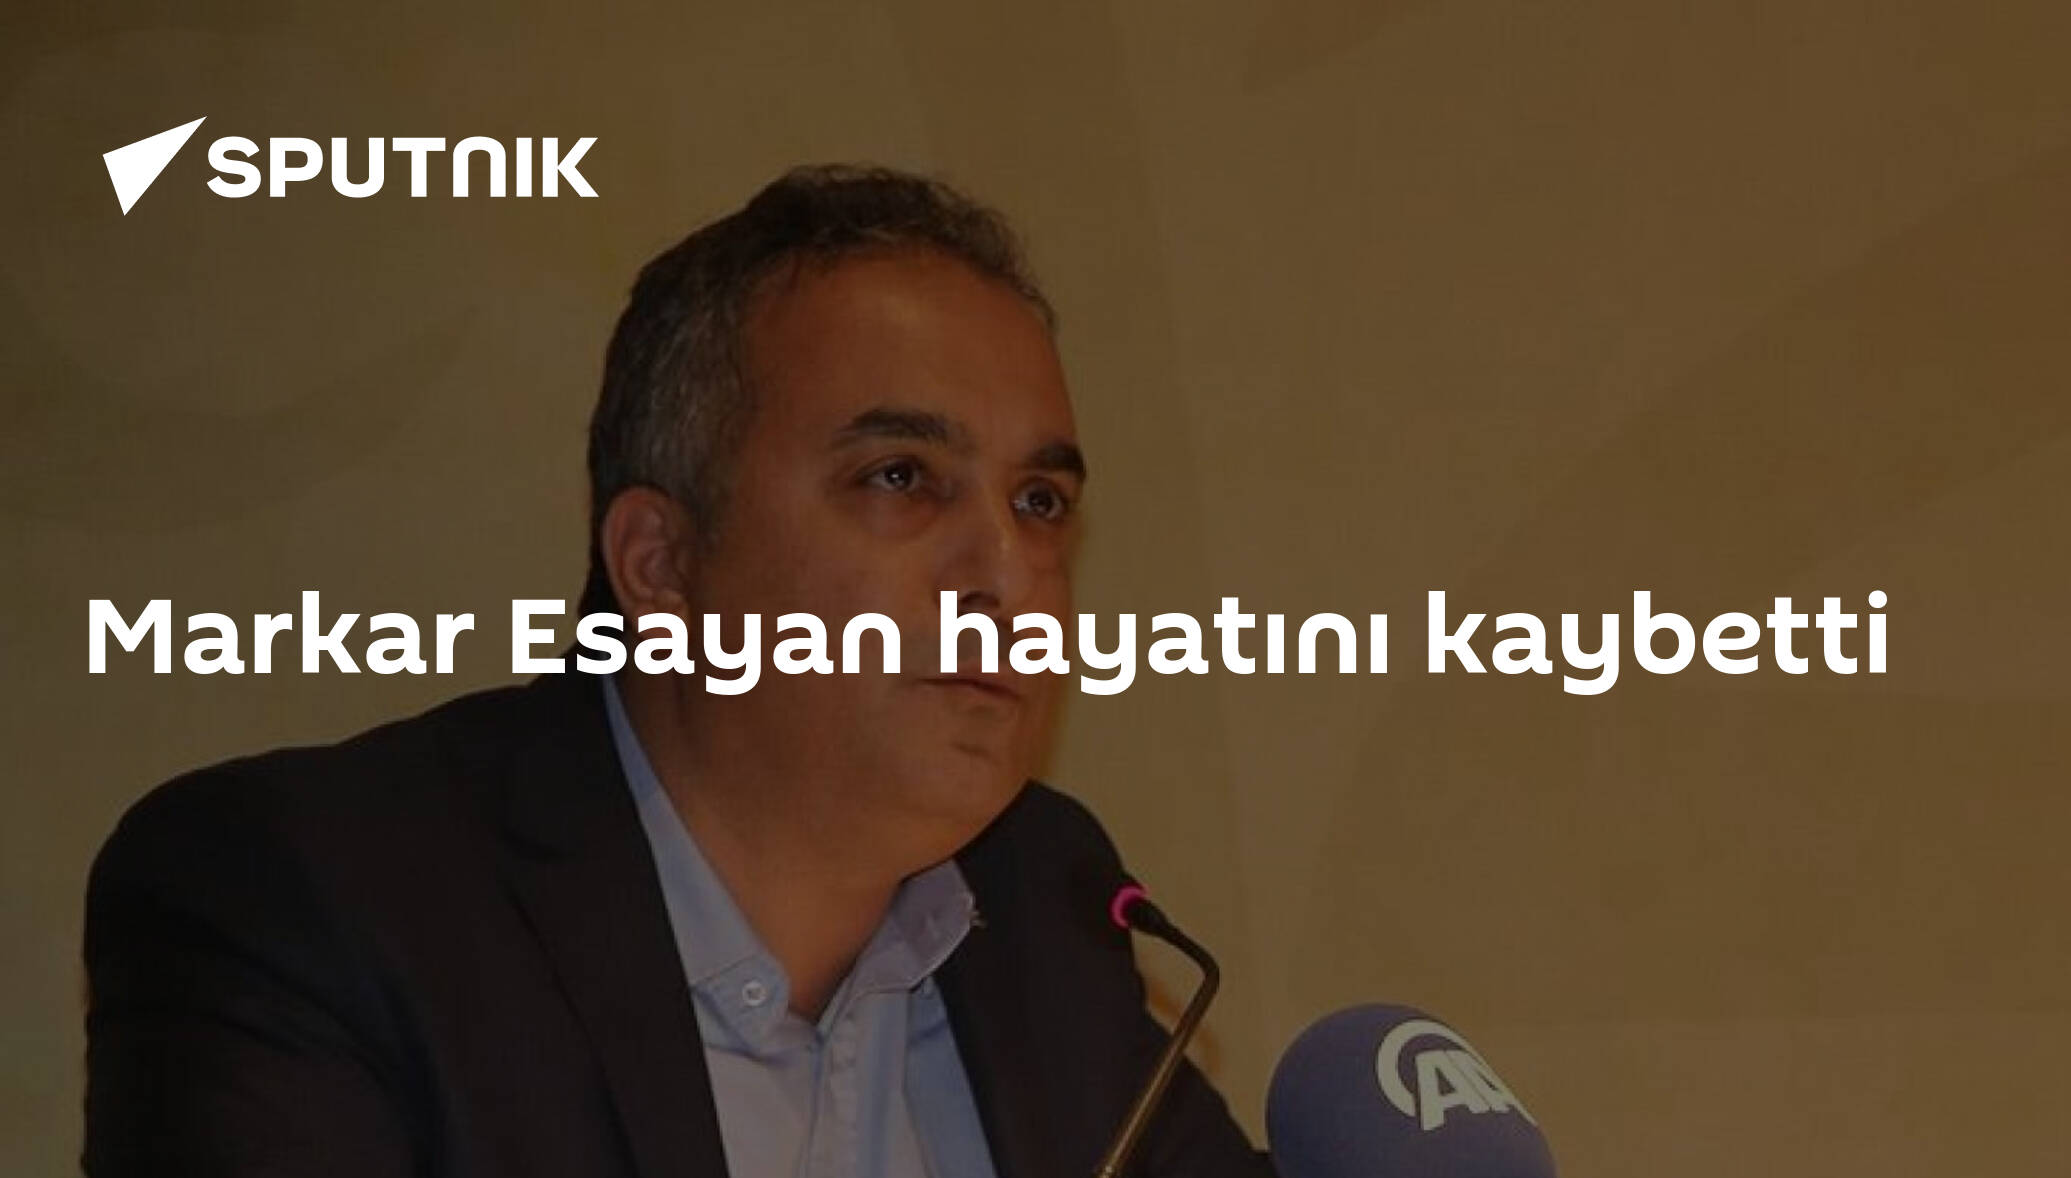 Markar Esayan hayatını kaybetti - 16.10.2020, Sputnik Türkiye